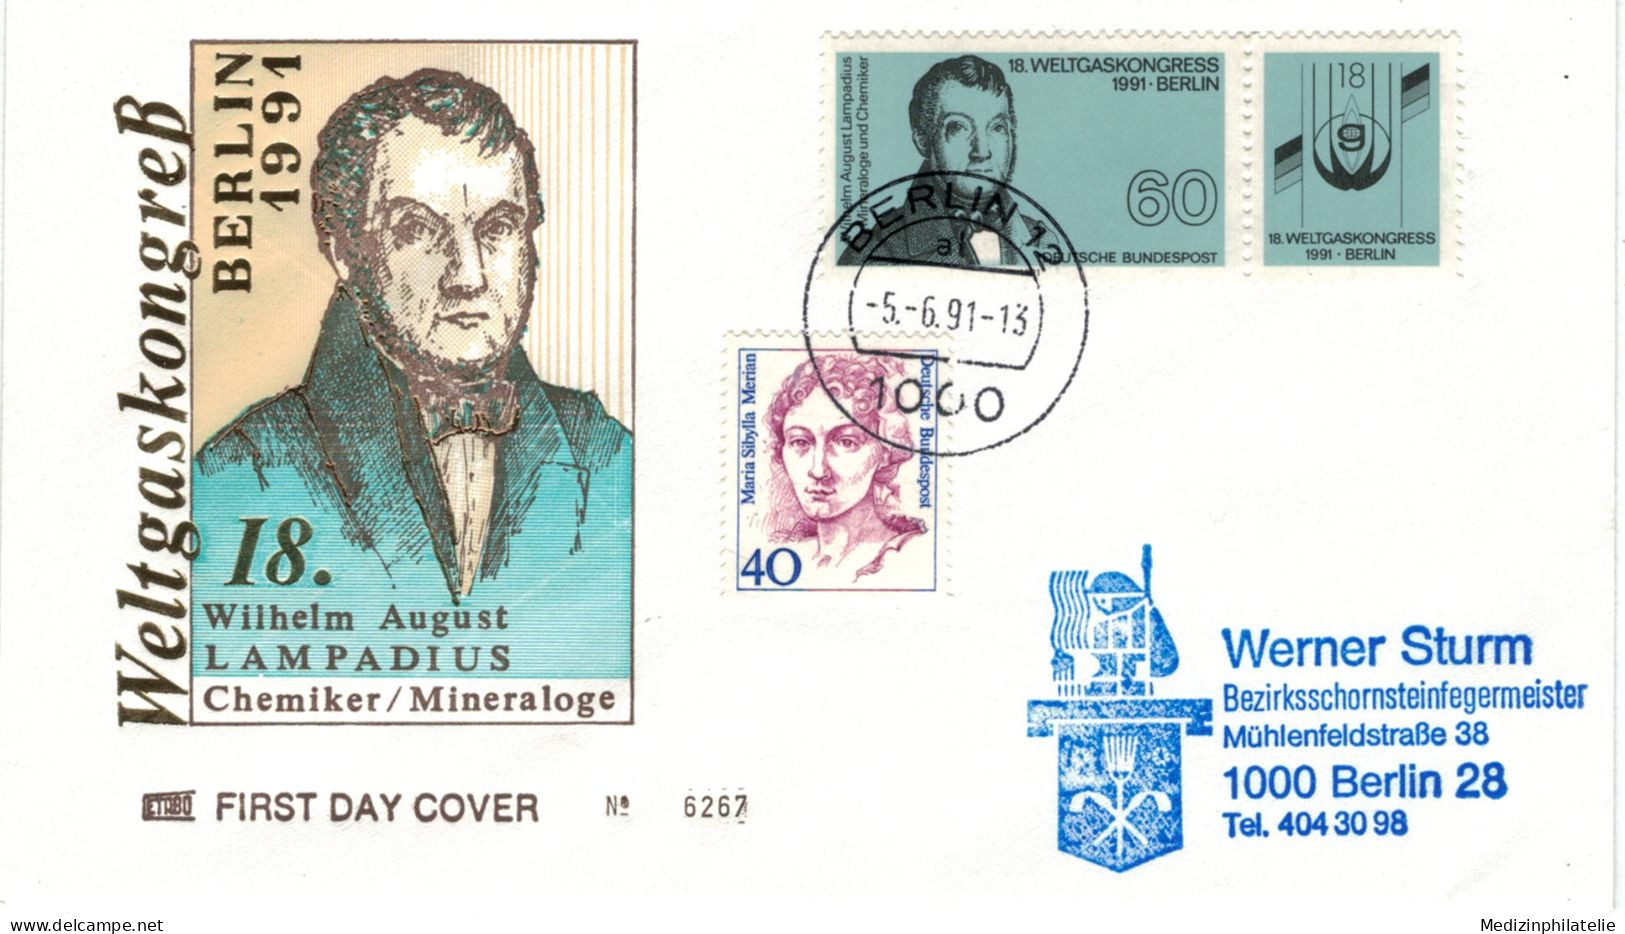 Wilhelm August Eberhard Lampadius War Ein Deutscher Hüttentechniker, Chemiker Und Agronom - 1 Berlin 1991 Zusammendruck - Chemie